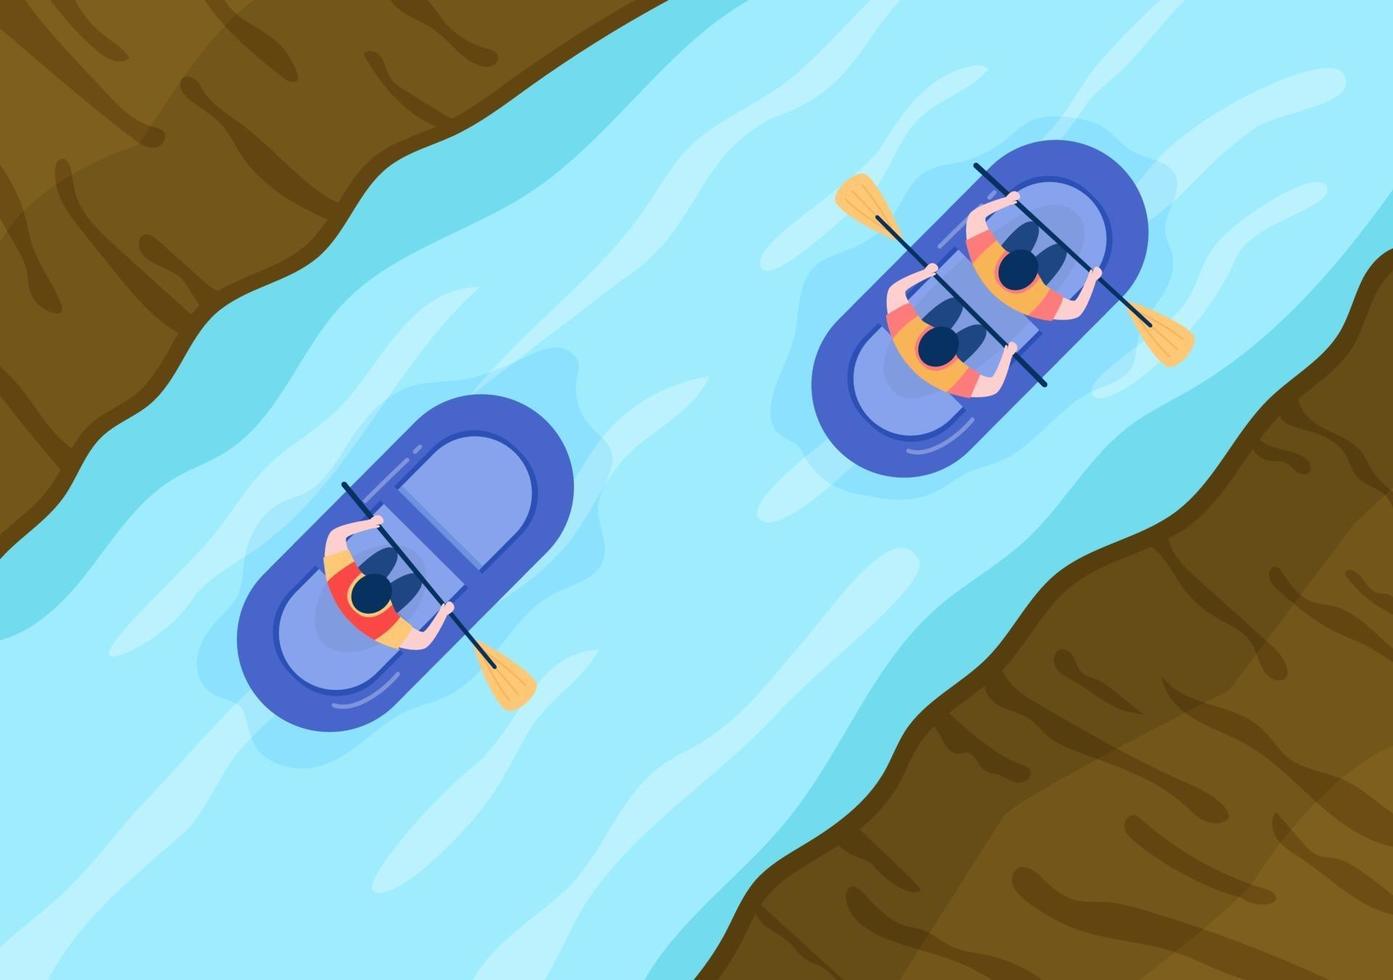 forsränning, kanot, kajakpaddling i floden vektorillustration vektor